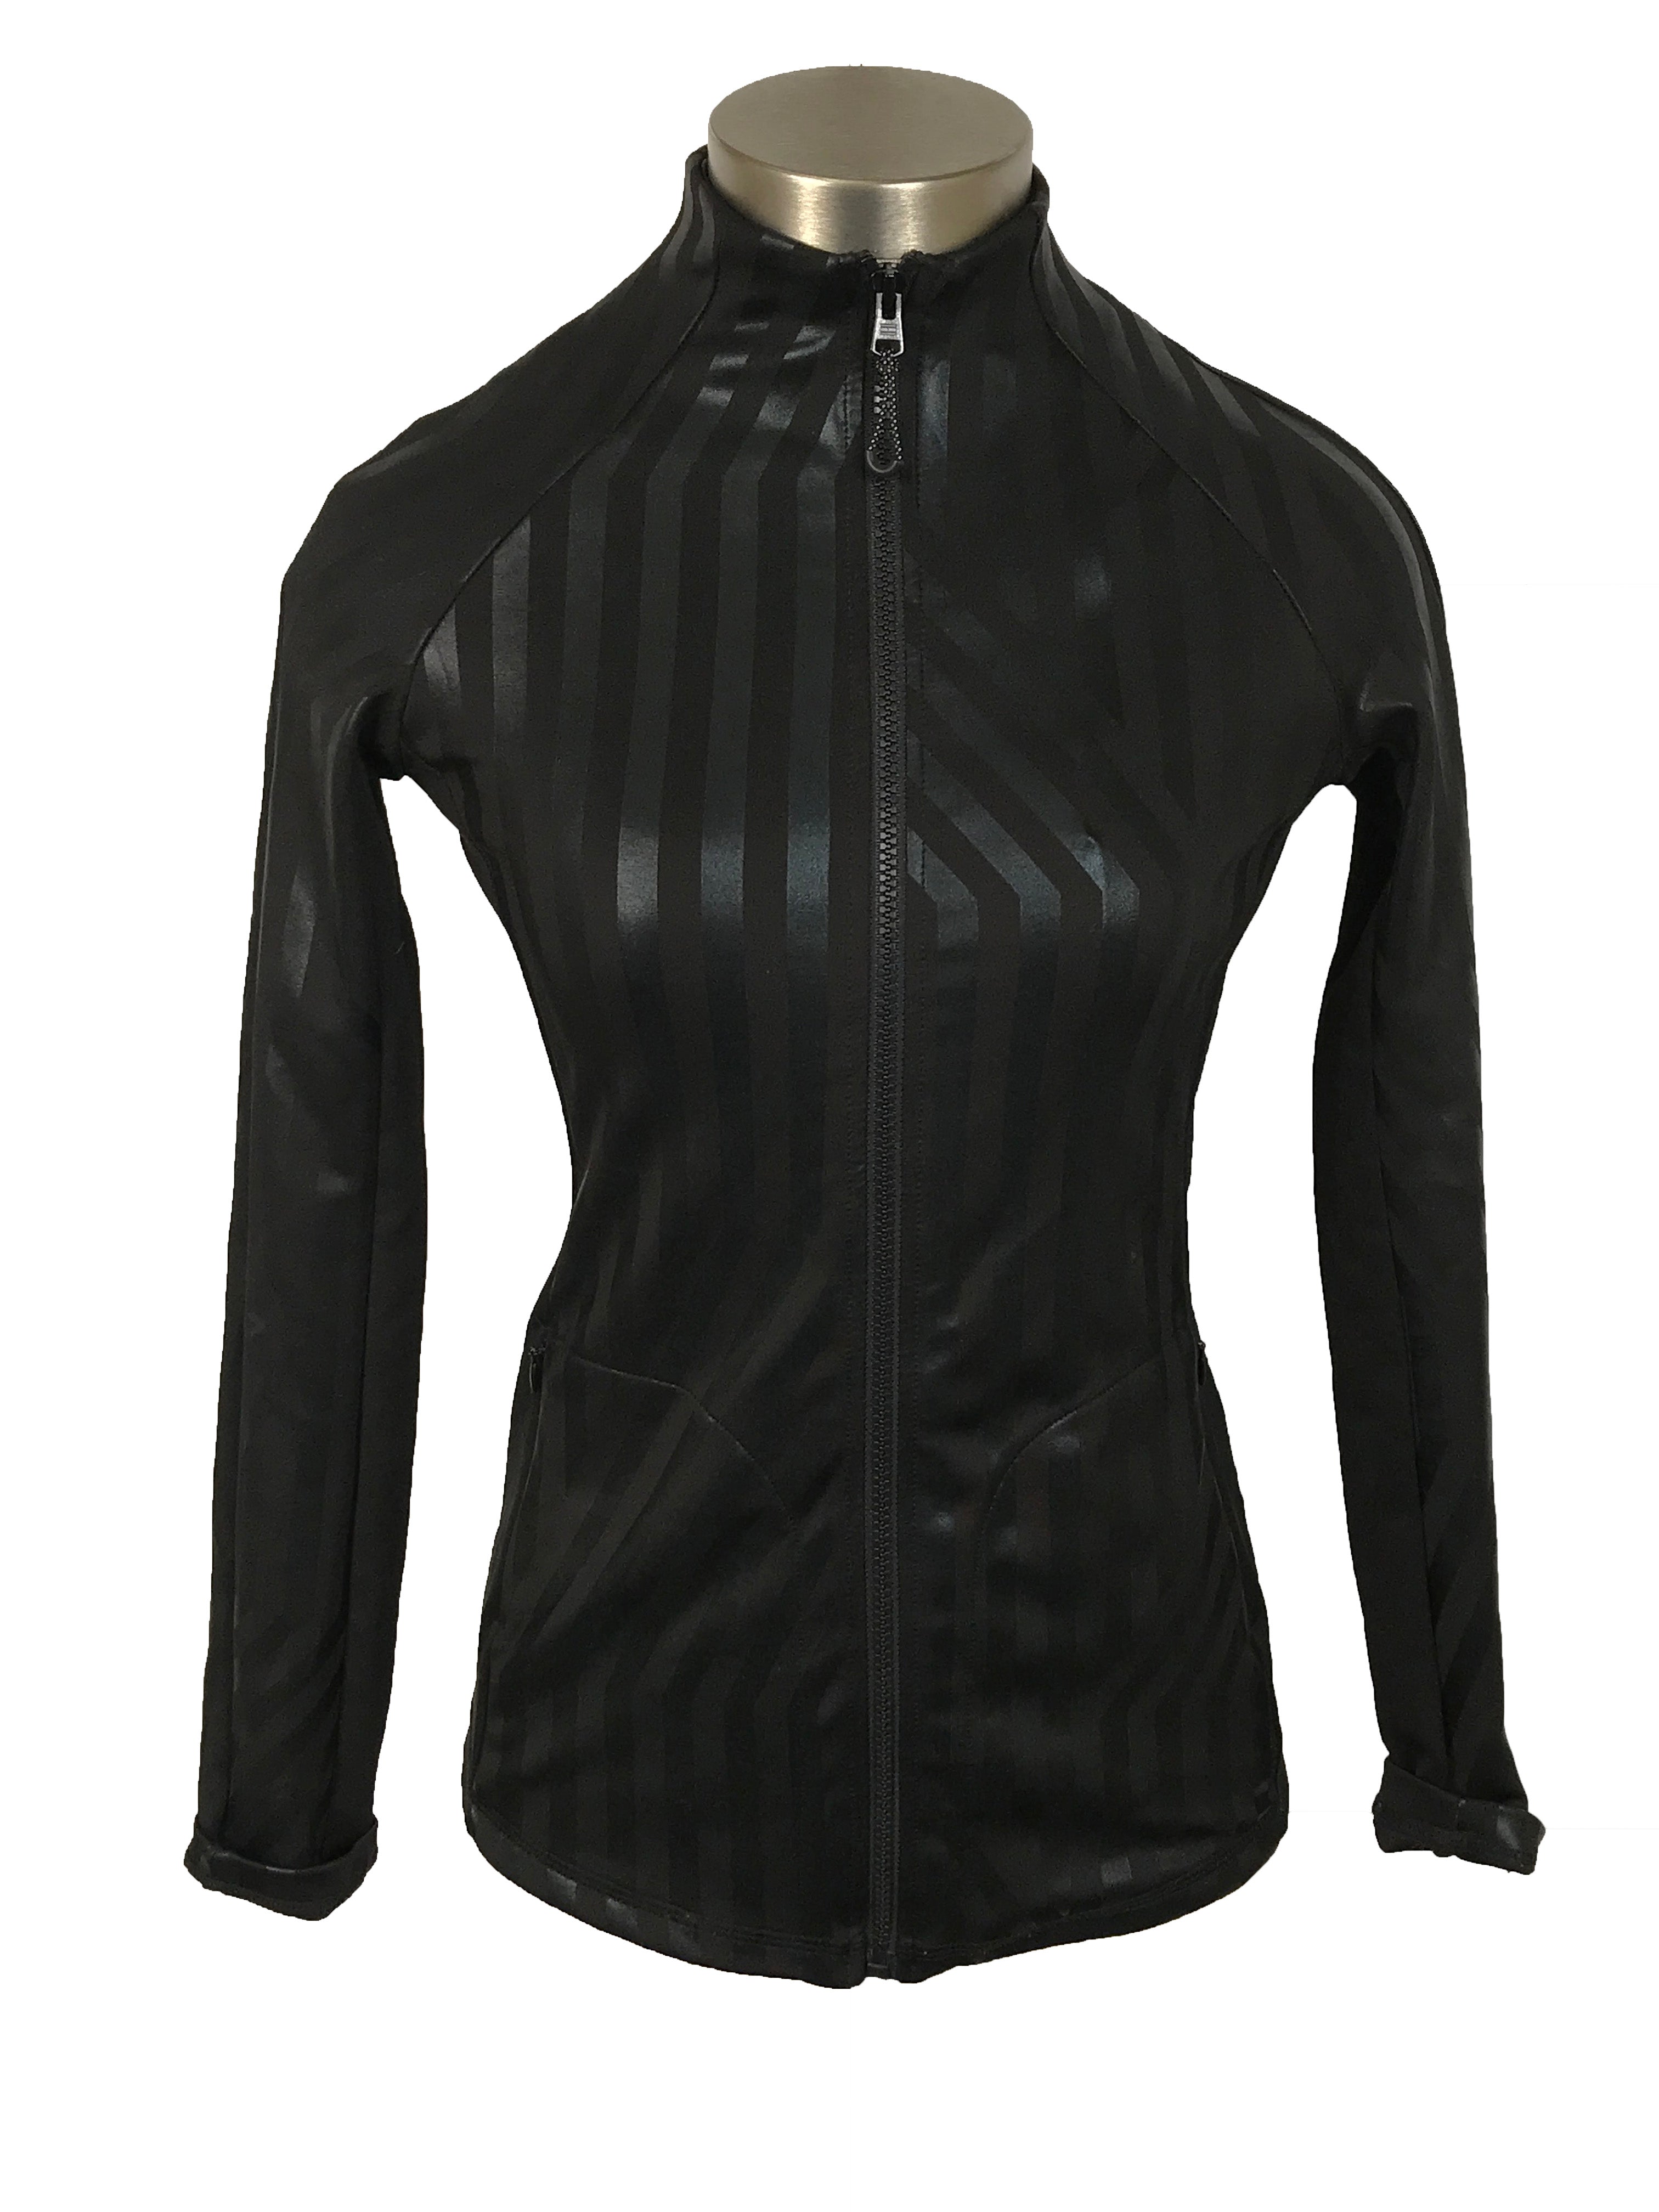 Tommy Hilfiger Sport Black Striped Full-Zip Sweater Women's Size XS